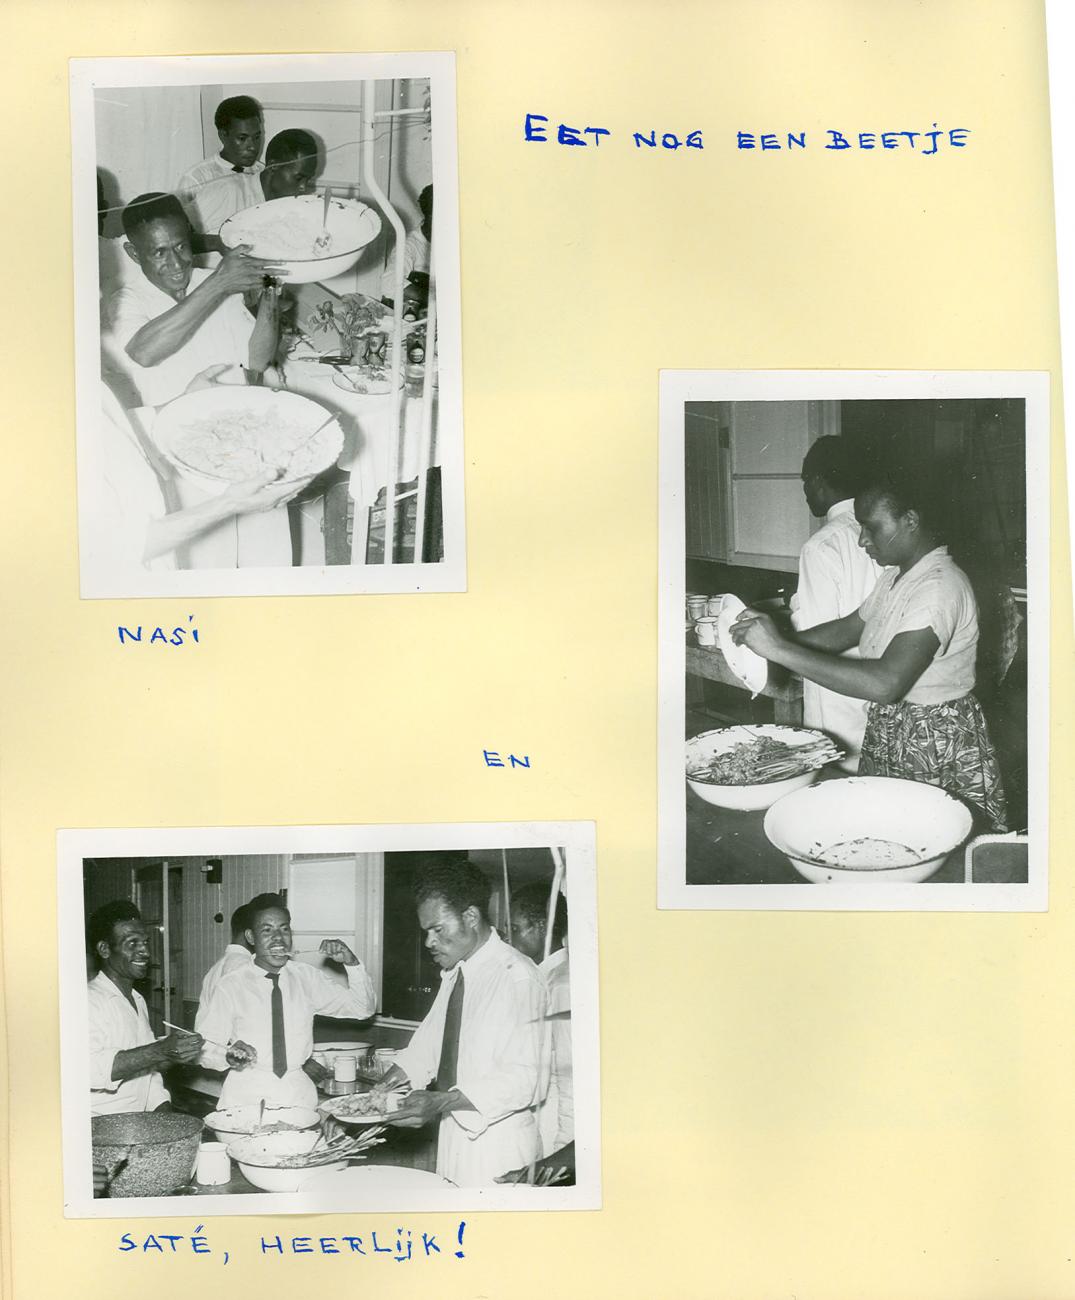 BD/83/34 - 
De avondmaaltijd in het onder bestuur gebrachte Sarmi: nasi en sate
